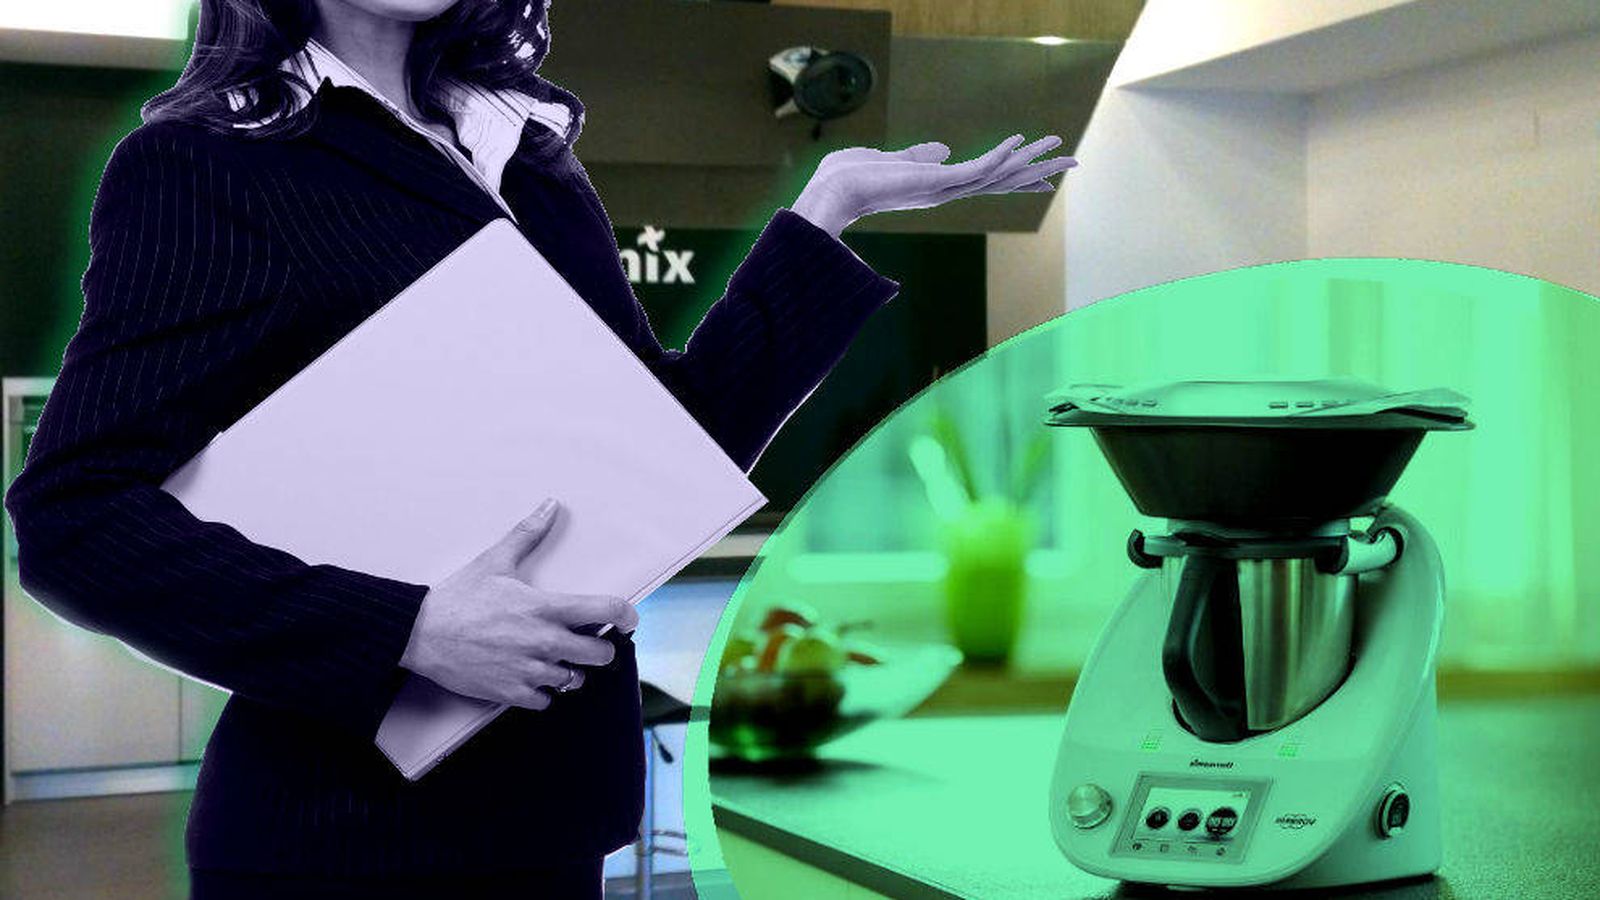 Lidl podrá seguir vendiendo su Thermomix: la justicia le ha dado la razón  sobre su robot de cocina